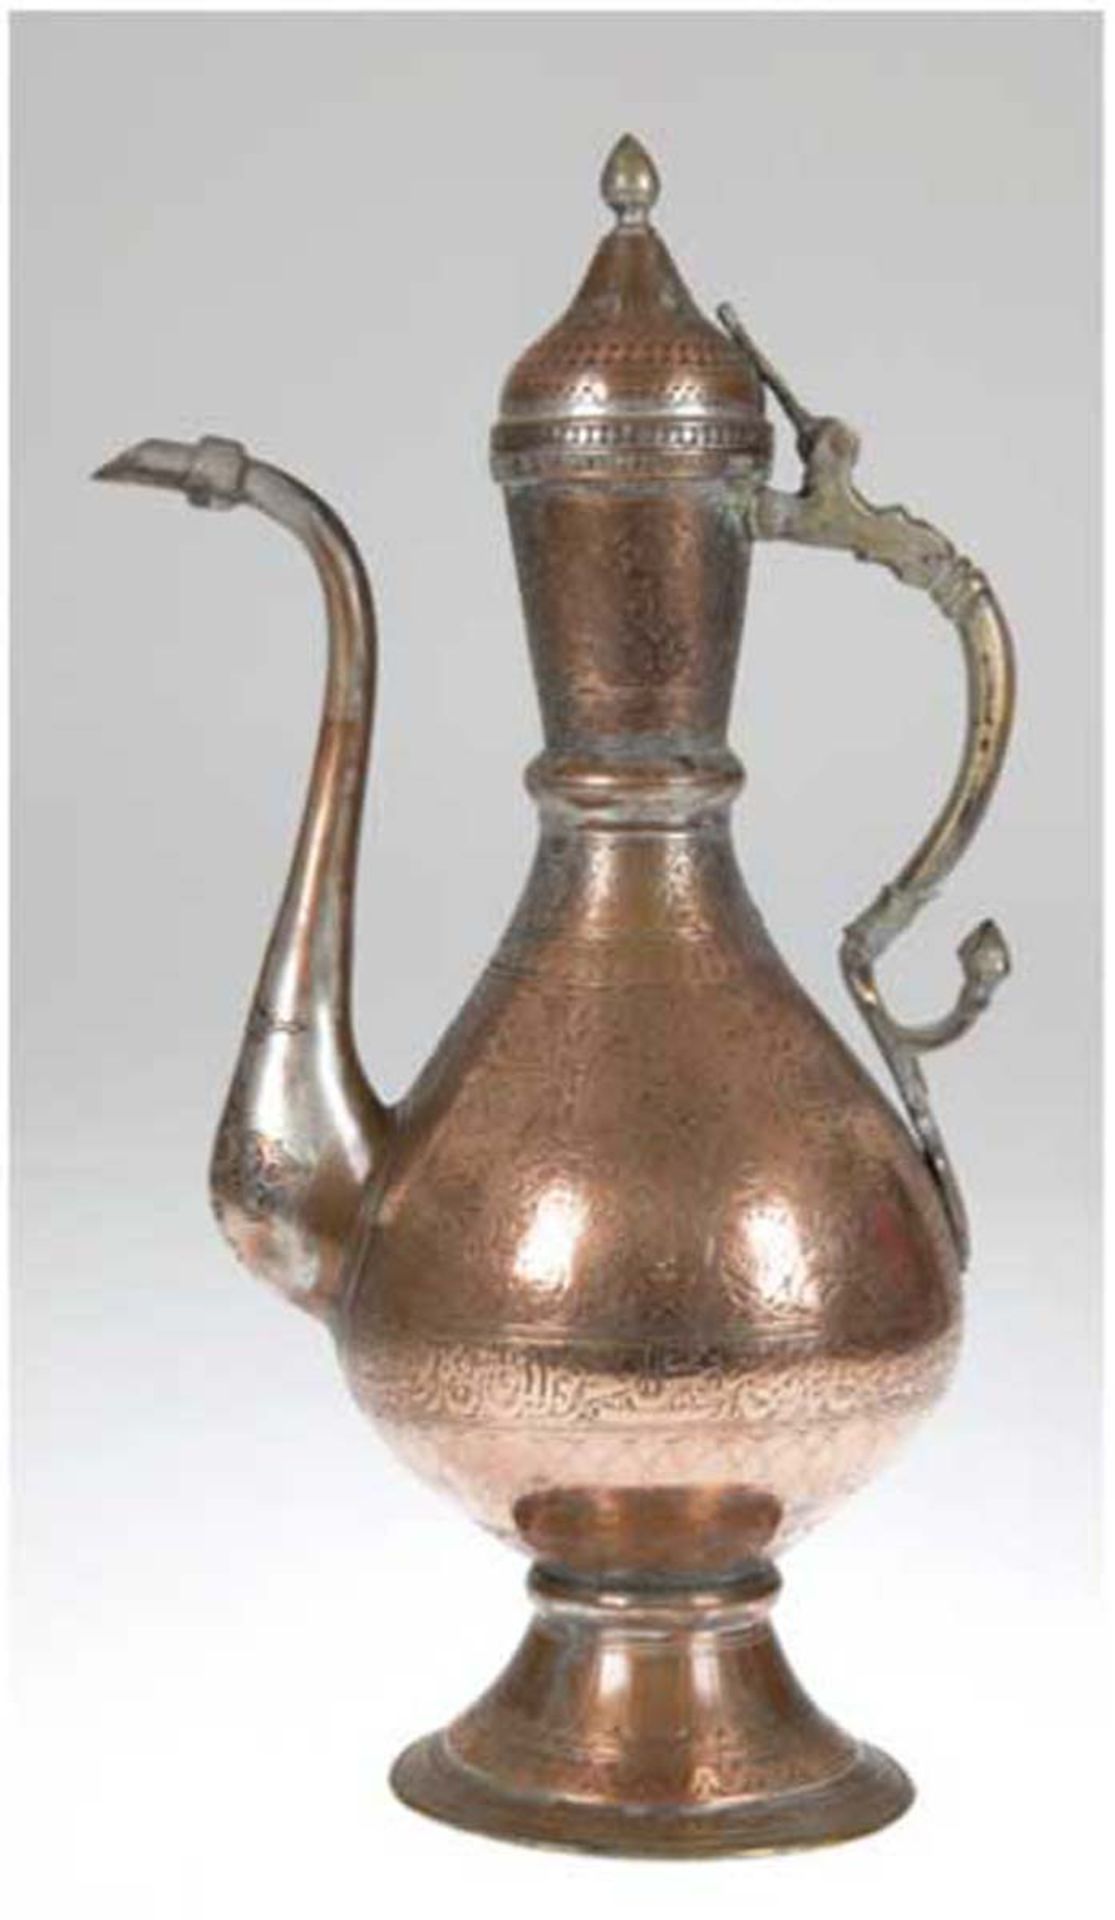 Osmanische Wasserkanne, 19. Jh., Kupfer, mit arabische Schrift u. antikem Dekor, H. 39 cm